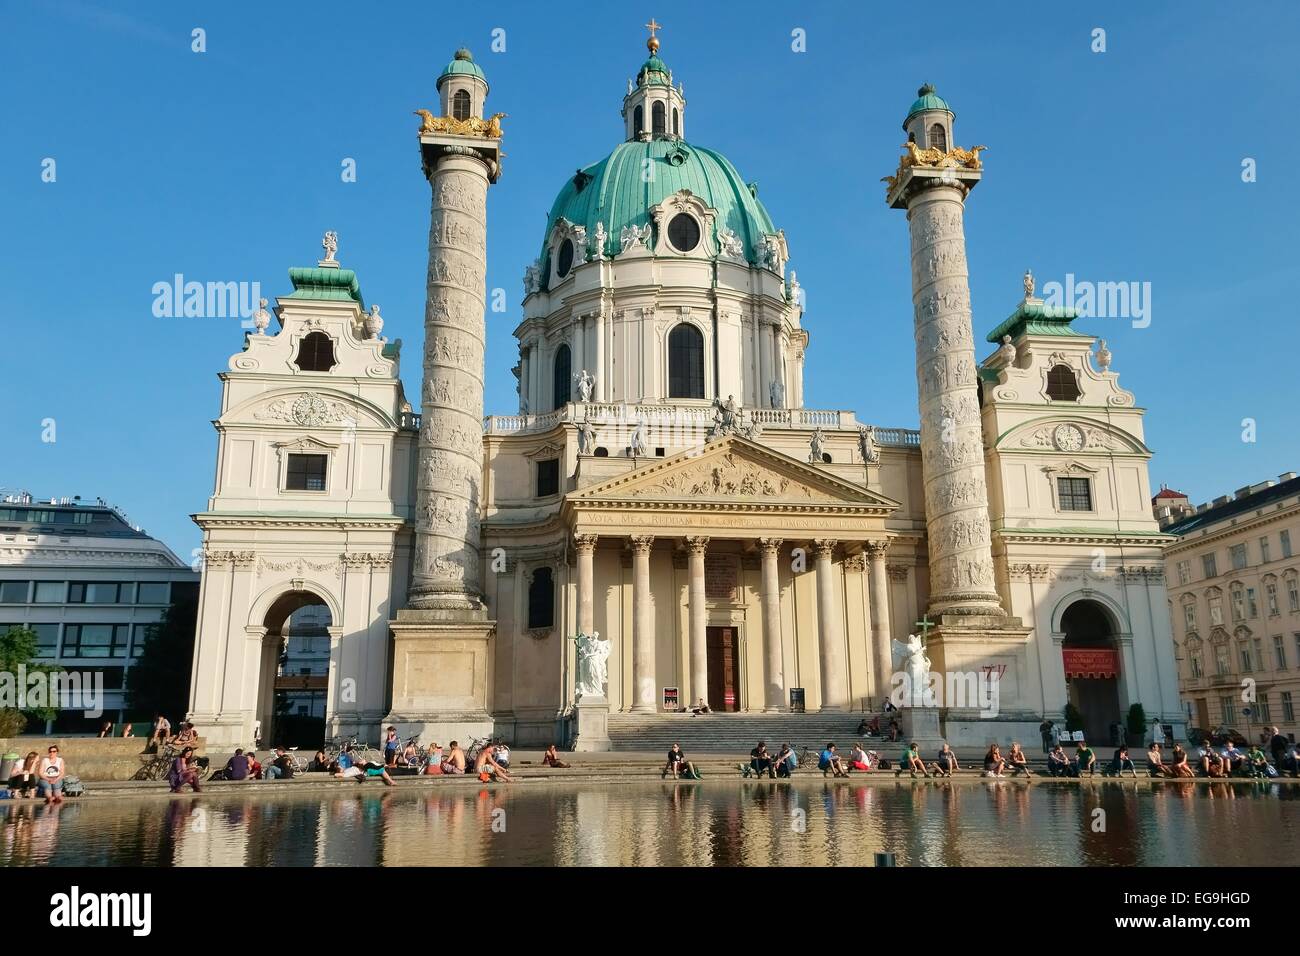 Baroque Karlskirche church designed by Johann Bernhard Fischer von Erlach, Karlsplatz square, Vienna, Austria Stock Photo